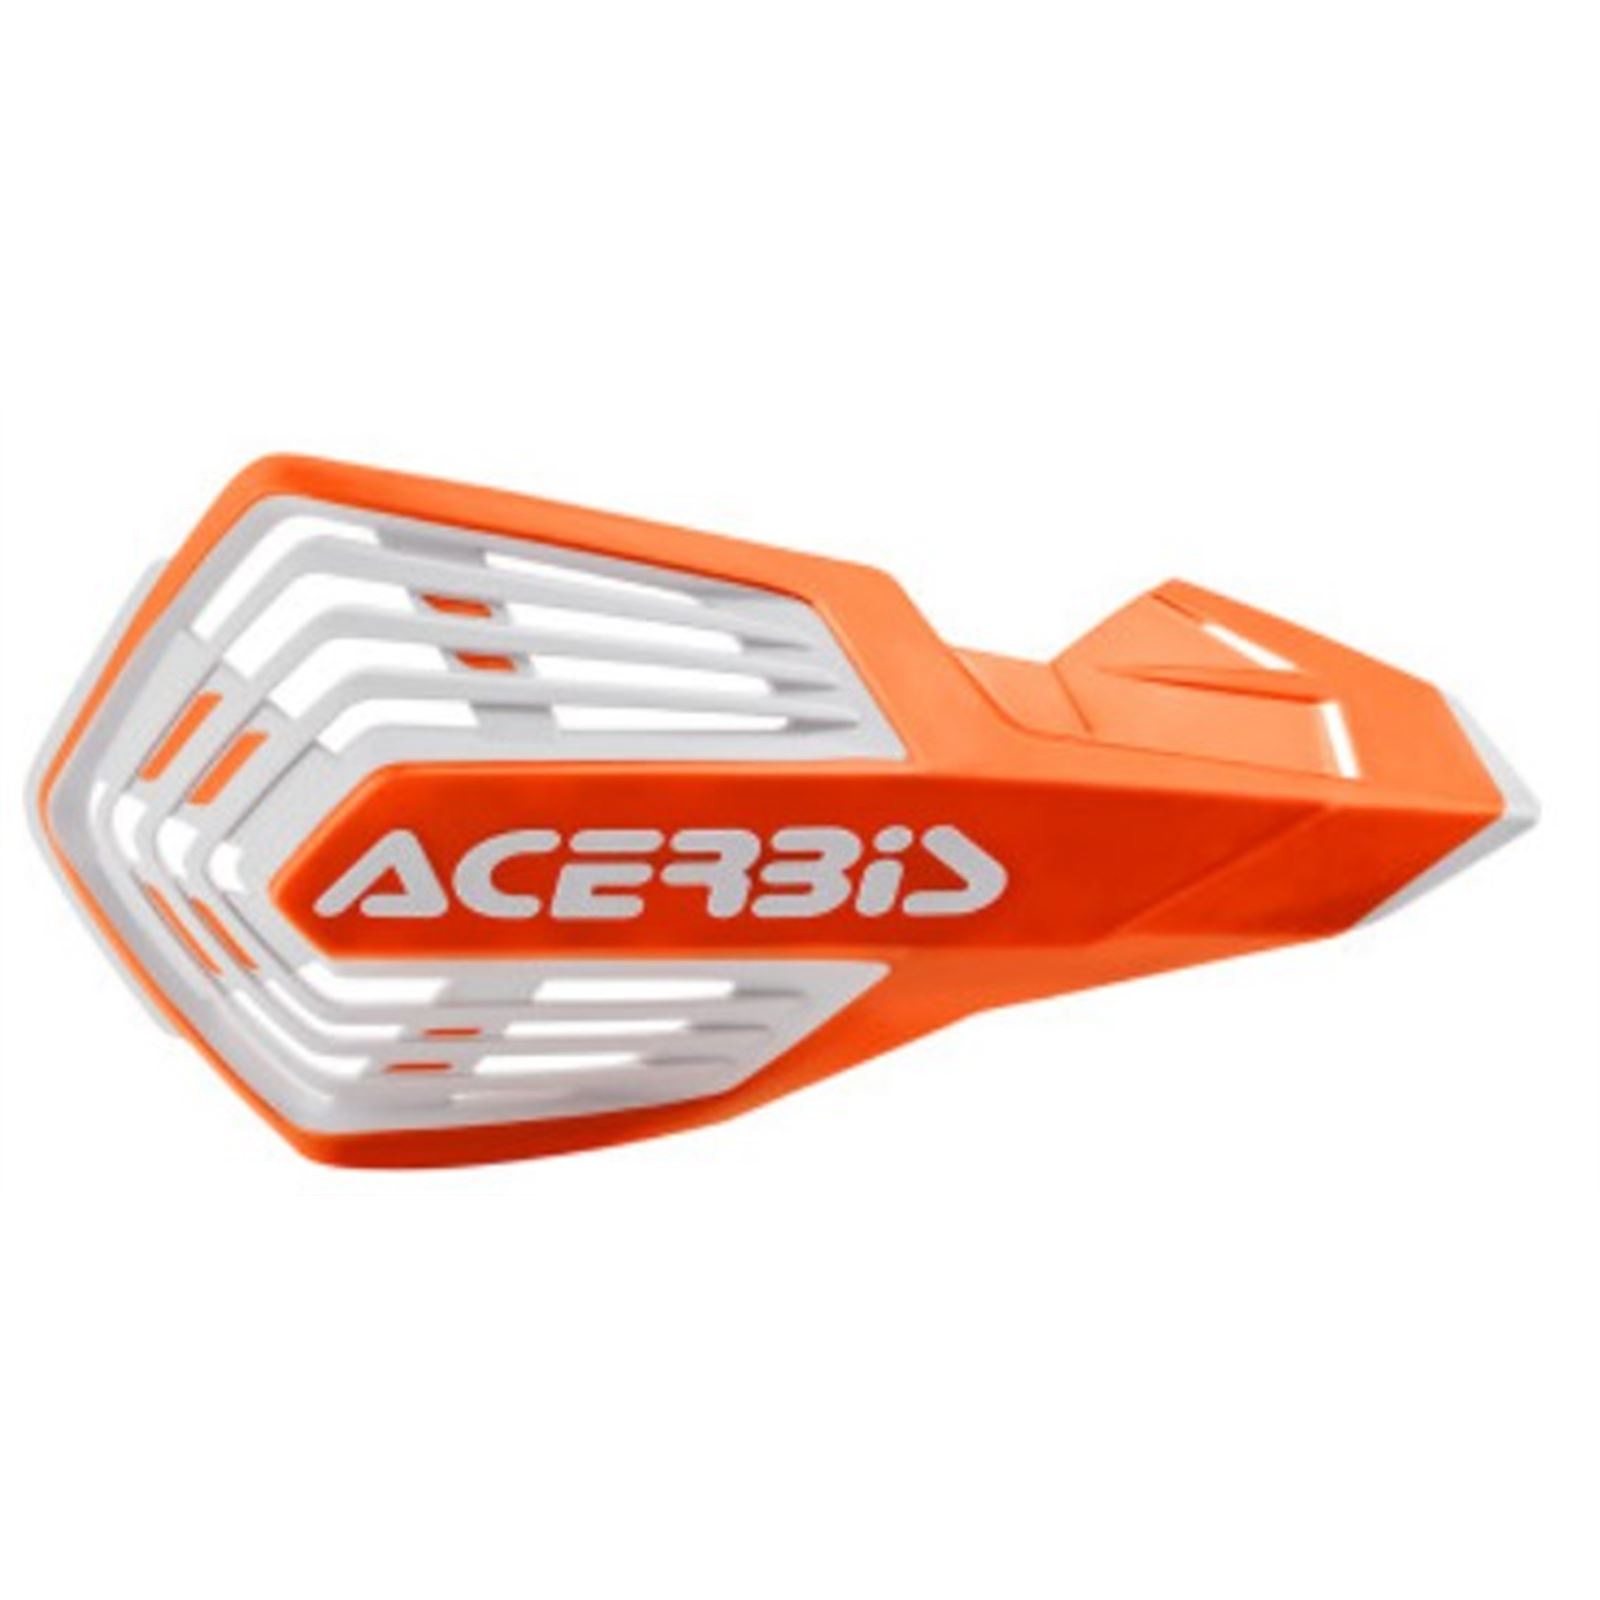 Acerbis '16 Orange/White X-Future Handguards